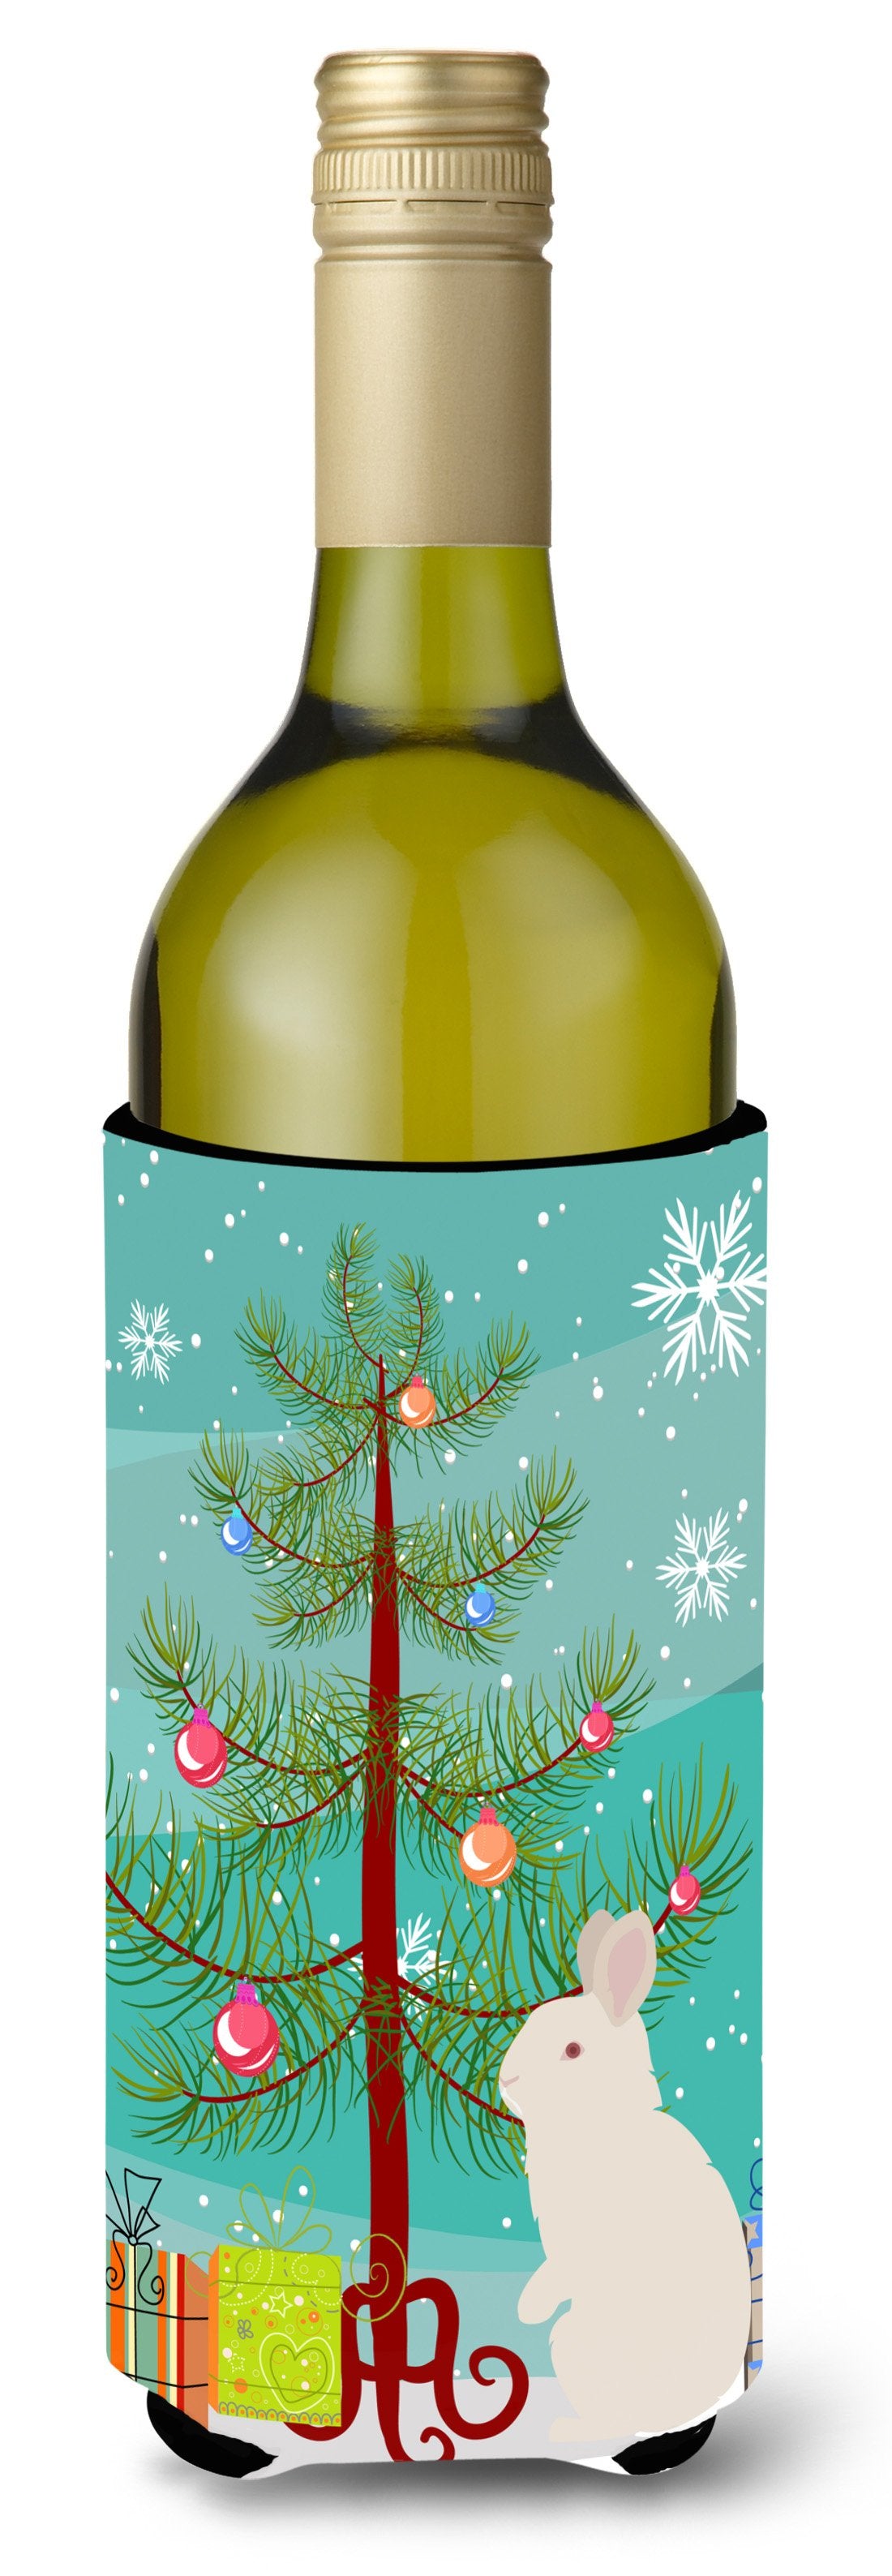 New Zealand White Rabbit Christmas Wine Bottle Beverge Insulator Hugger BB9332LITERK by Caroline's Treasures